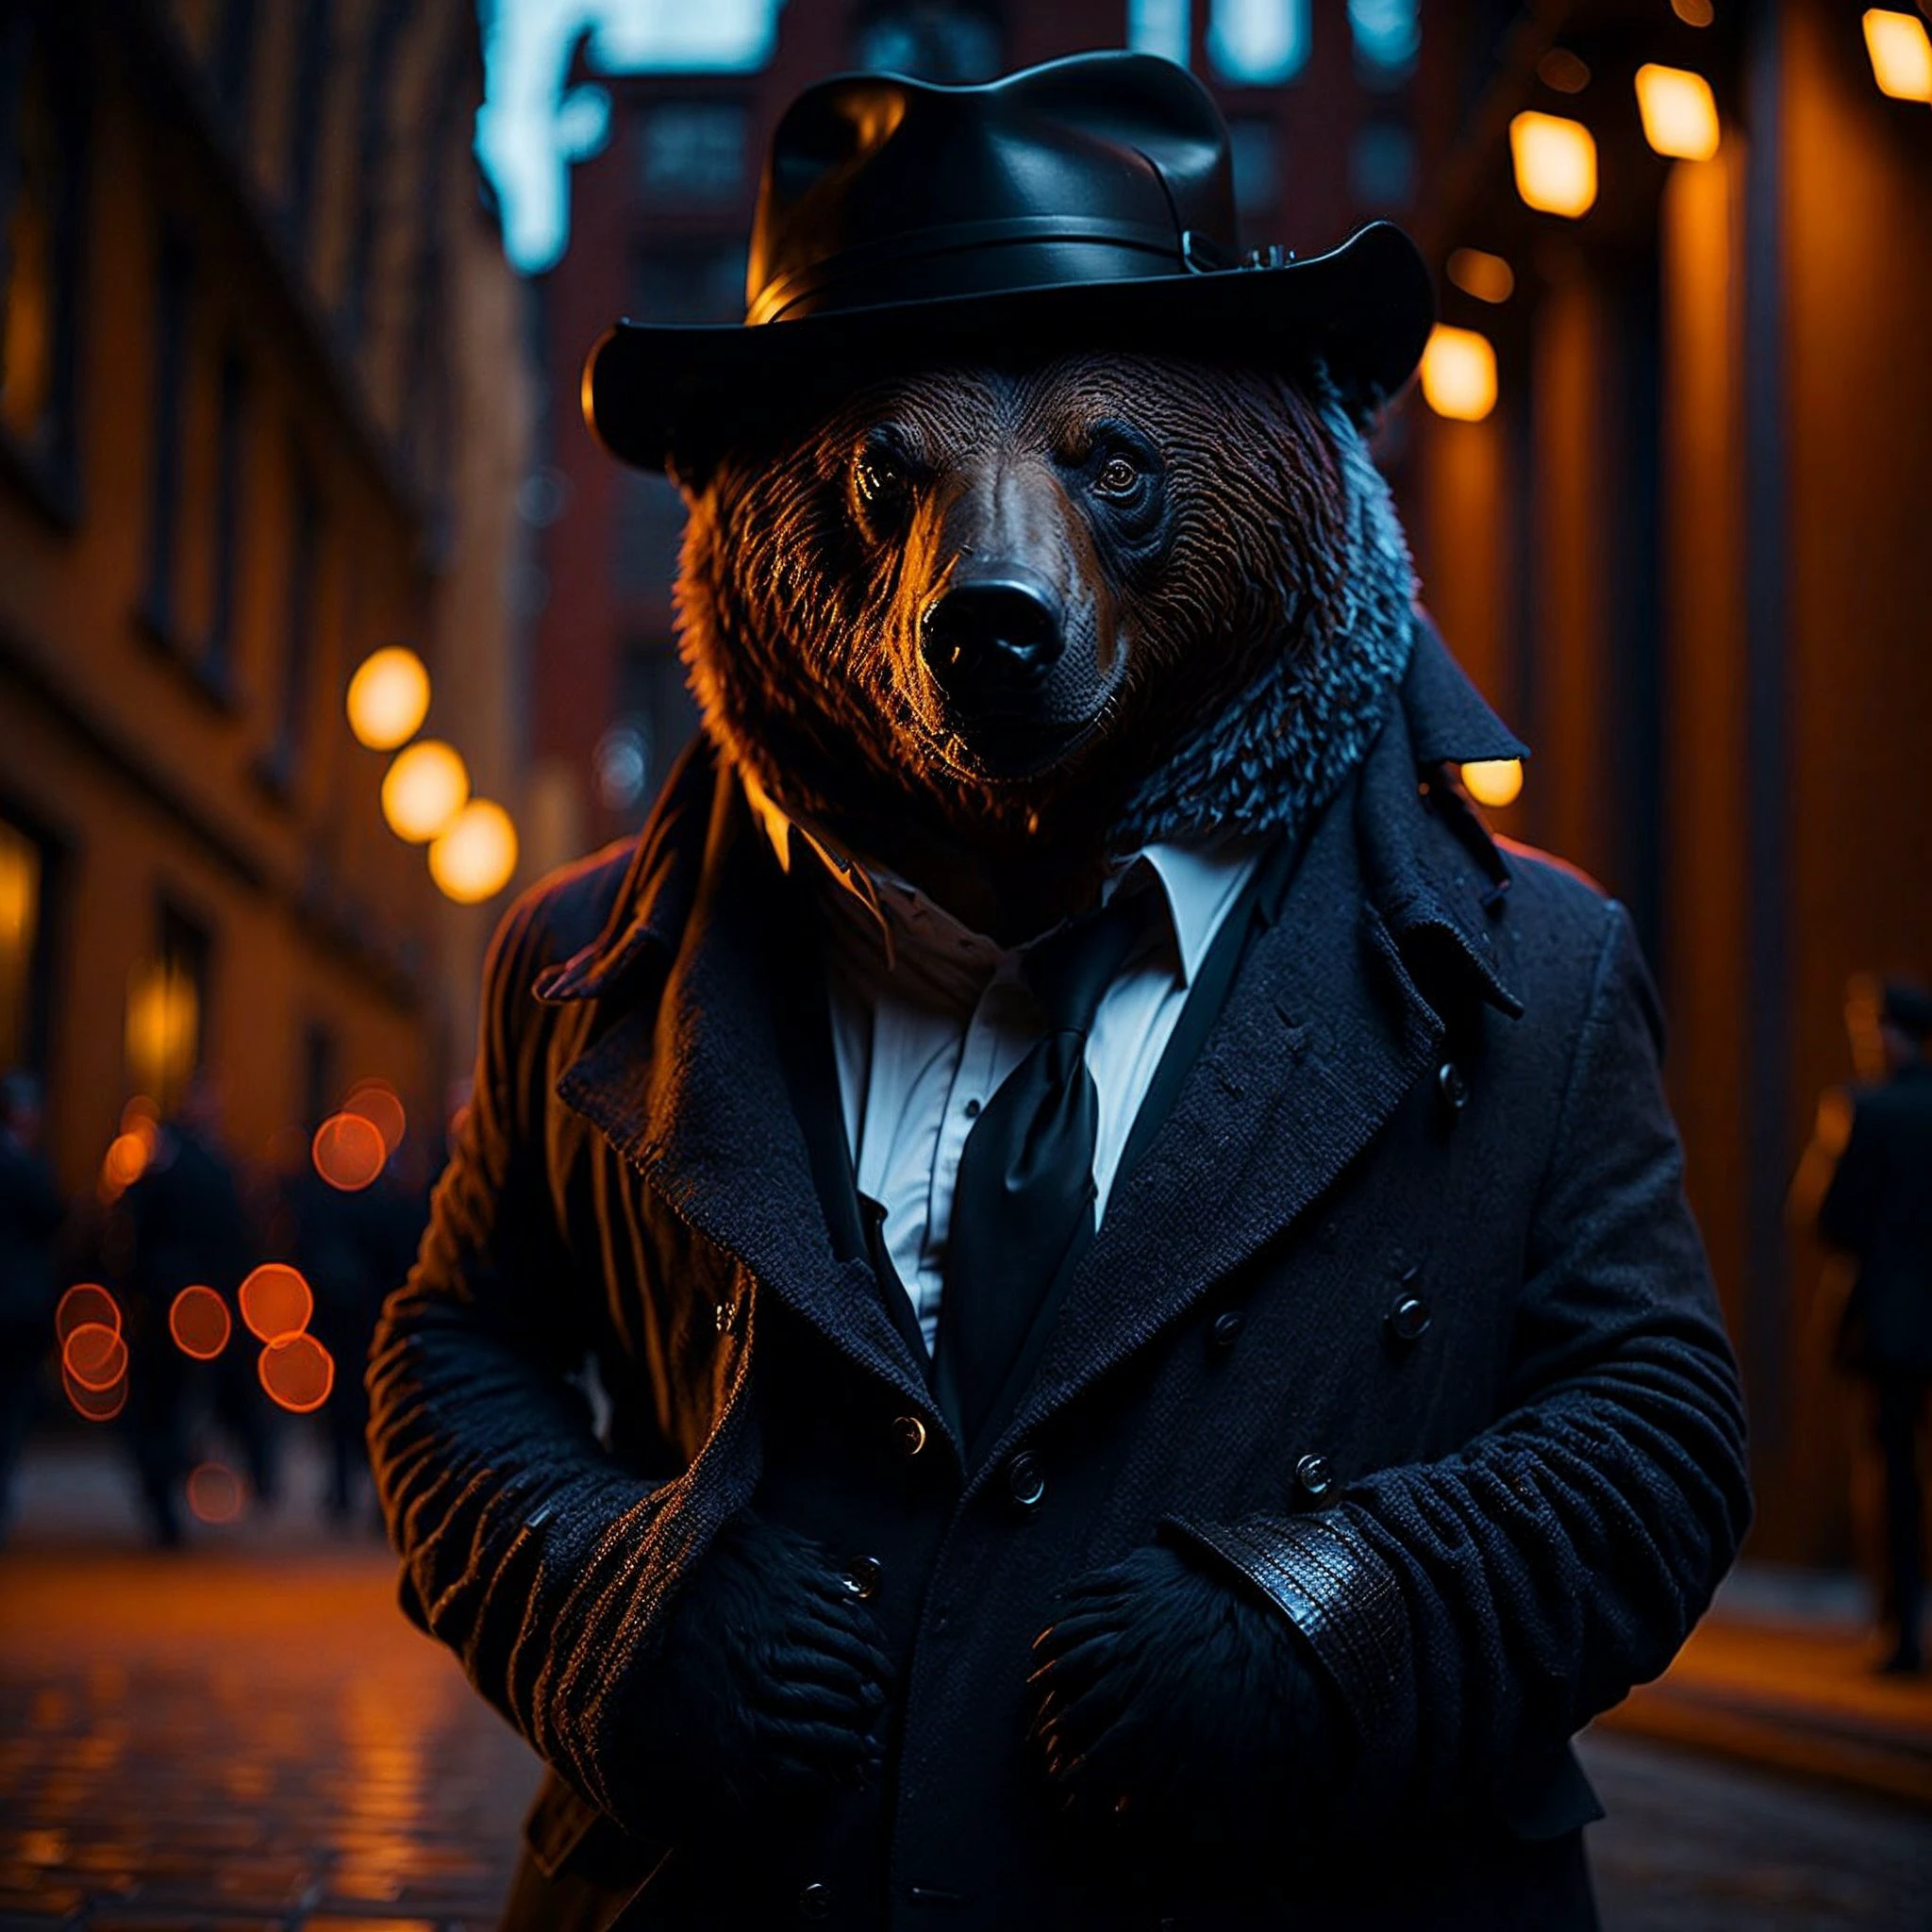 Отмеченный наградами портрет медведя в костюме секретного агента, на Красной площади, боке, с подсветкой